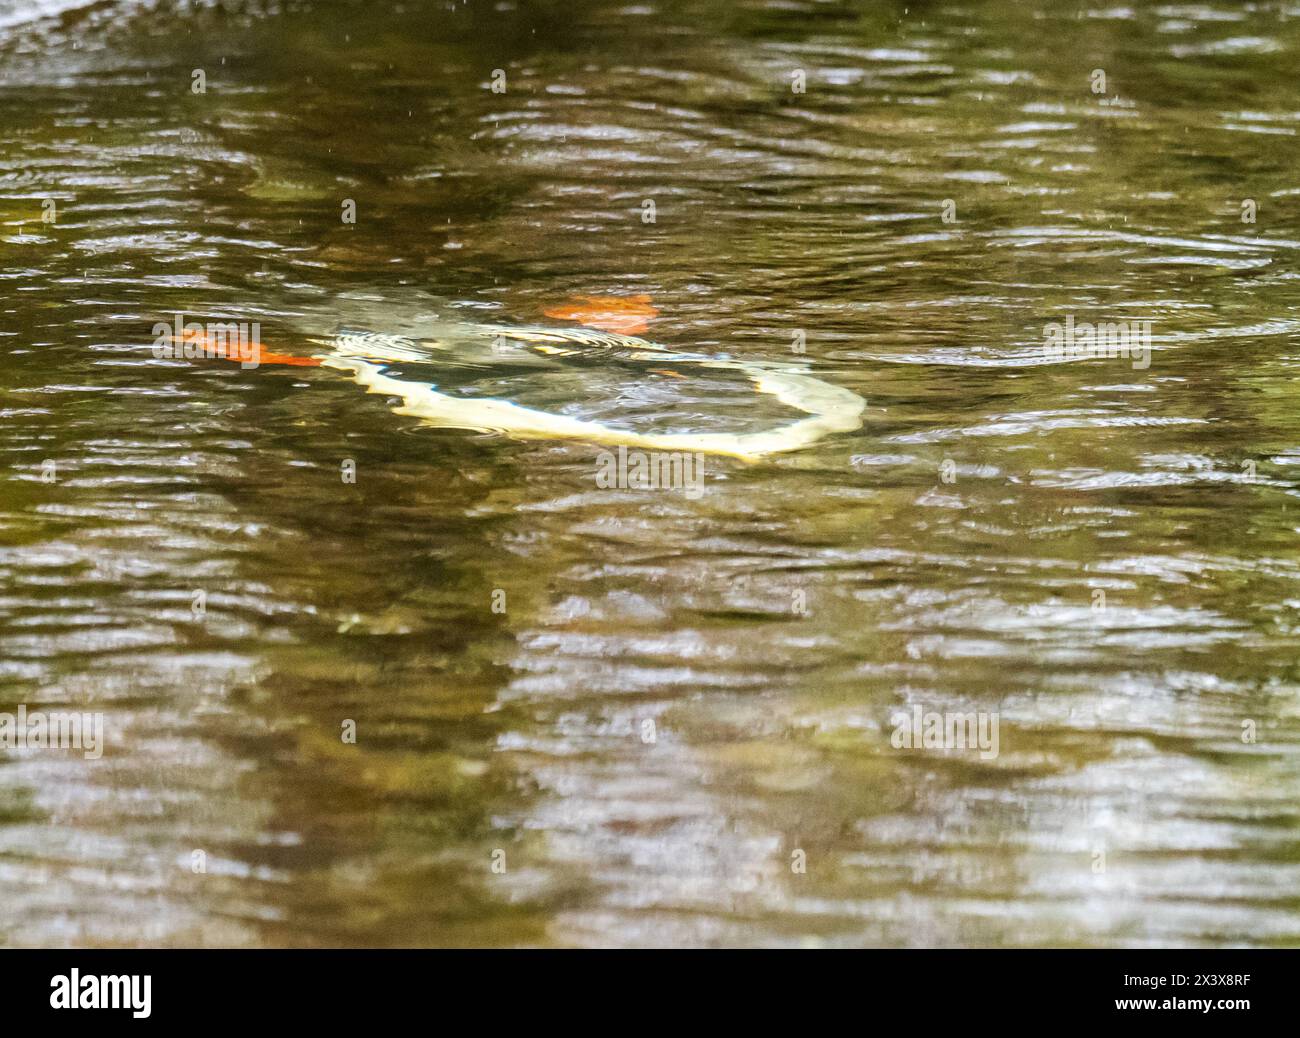 Un goosandre mâle, Mergus merganser sous l'eau, plongeant à la recherche de poissons sur la rivière Rothay à Ambleside, Cumbria, Royaume-Uni. Banque D'Images